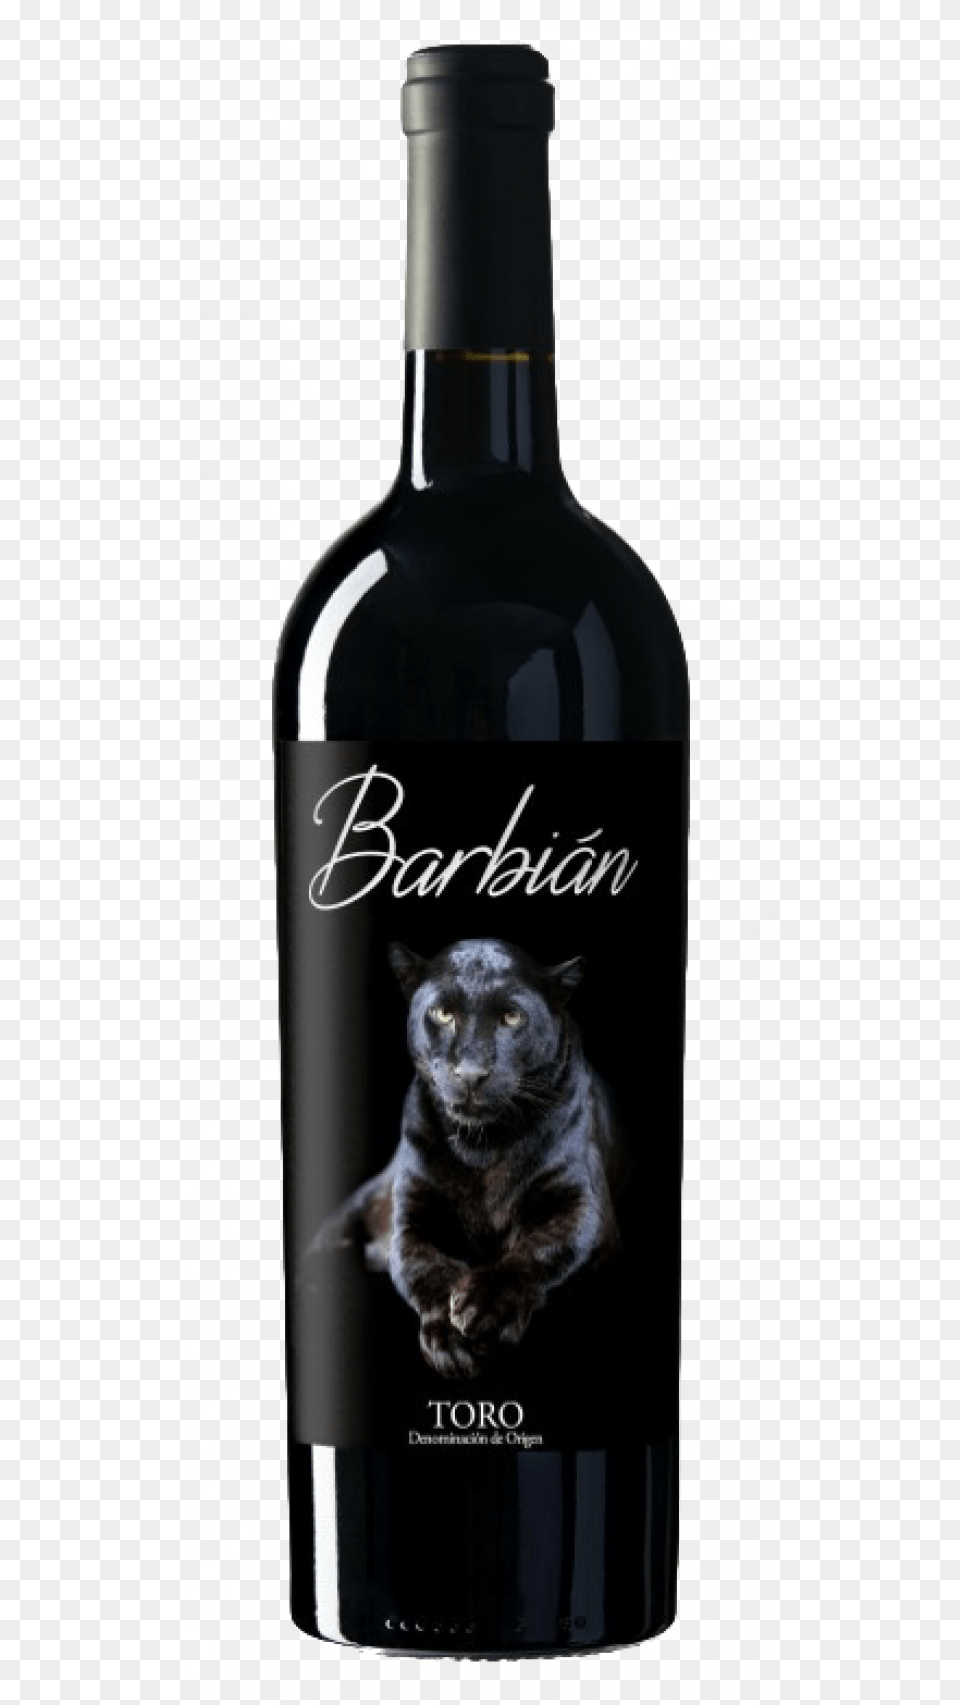 Barbin Roble Toro Hardys Crest Cabernet Sauvignon 2015, Alcohol, Liquor, Bottle, Beverage Png Image